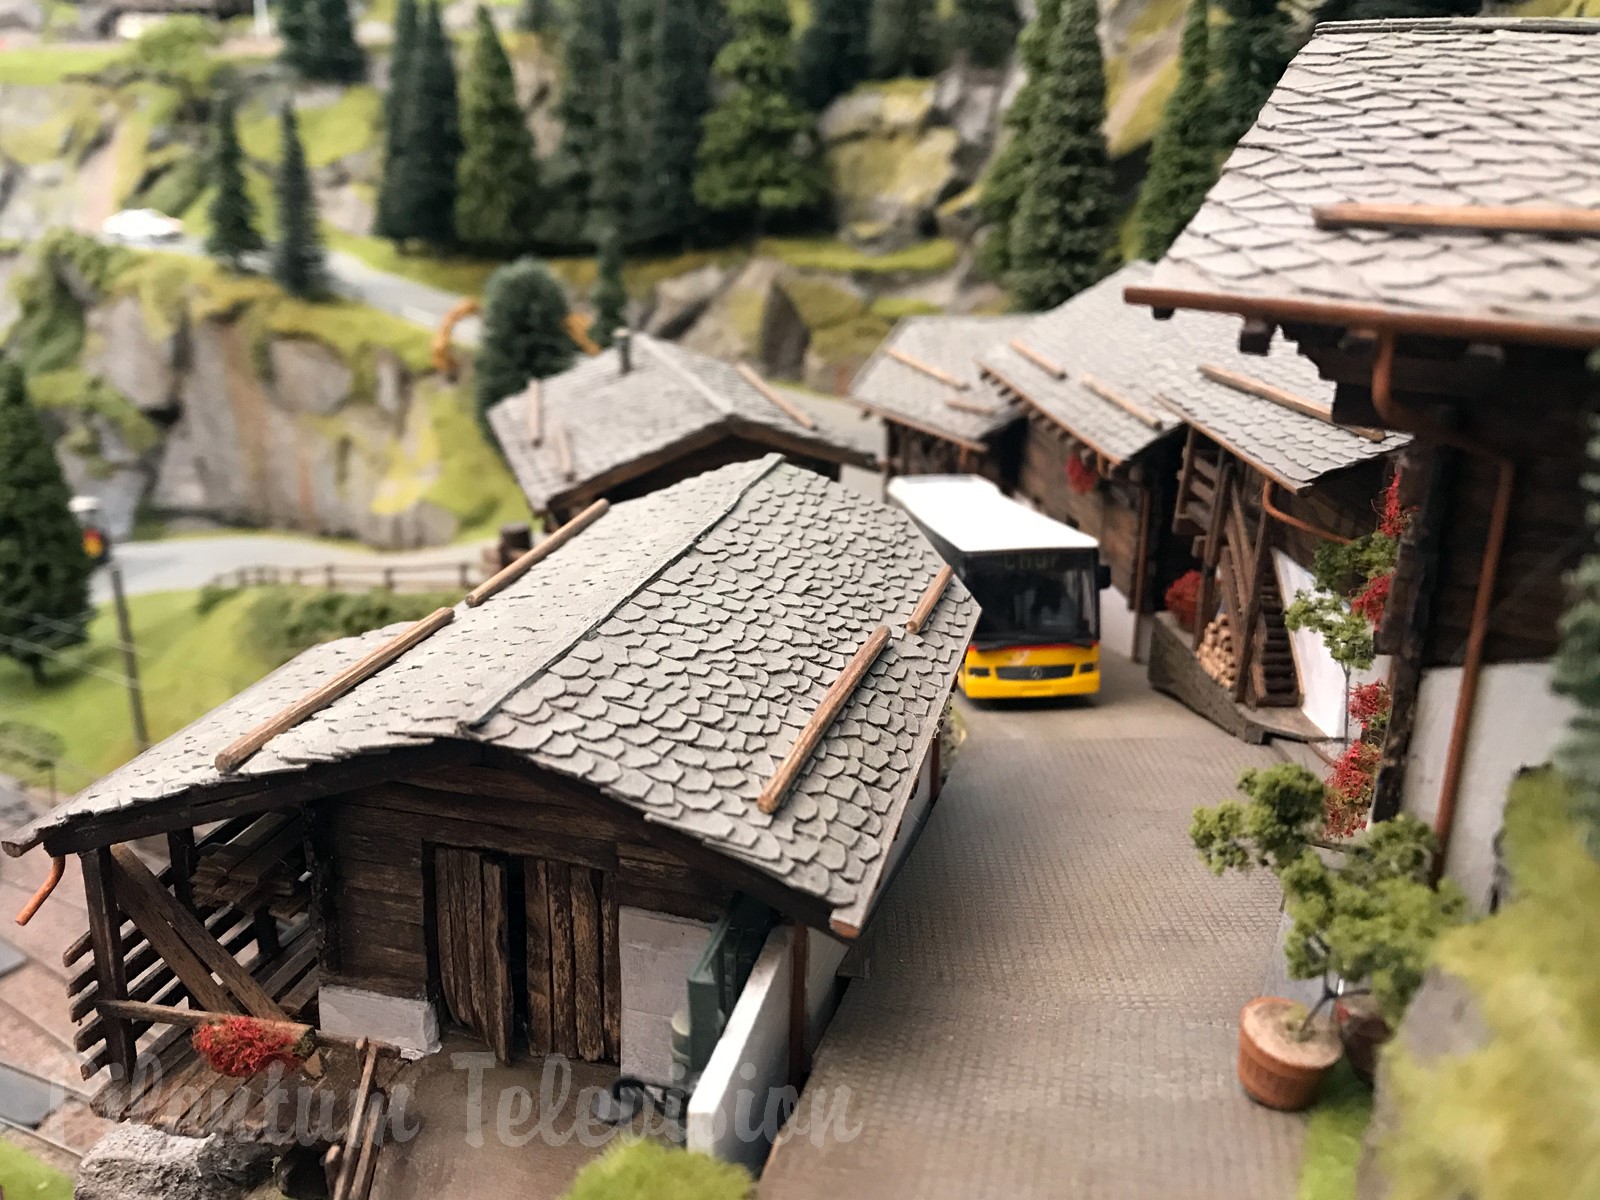 Modeltog i skala HO i Schweiz: Brian Rodhams smukke Schweiziske modeljernbaneanlæg